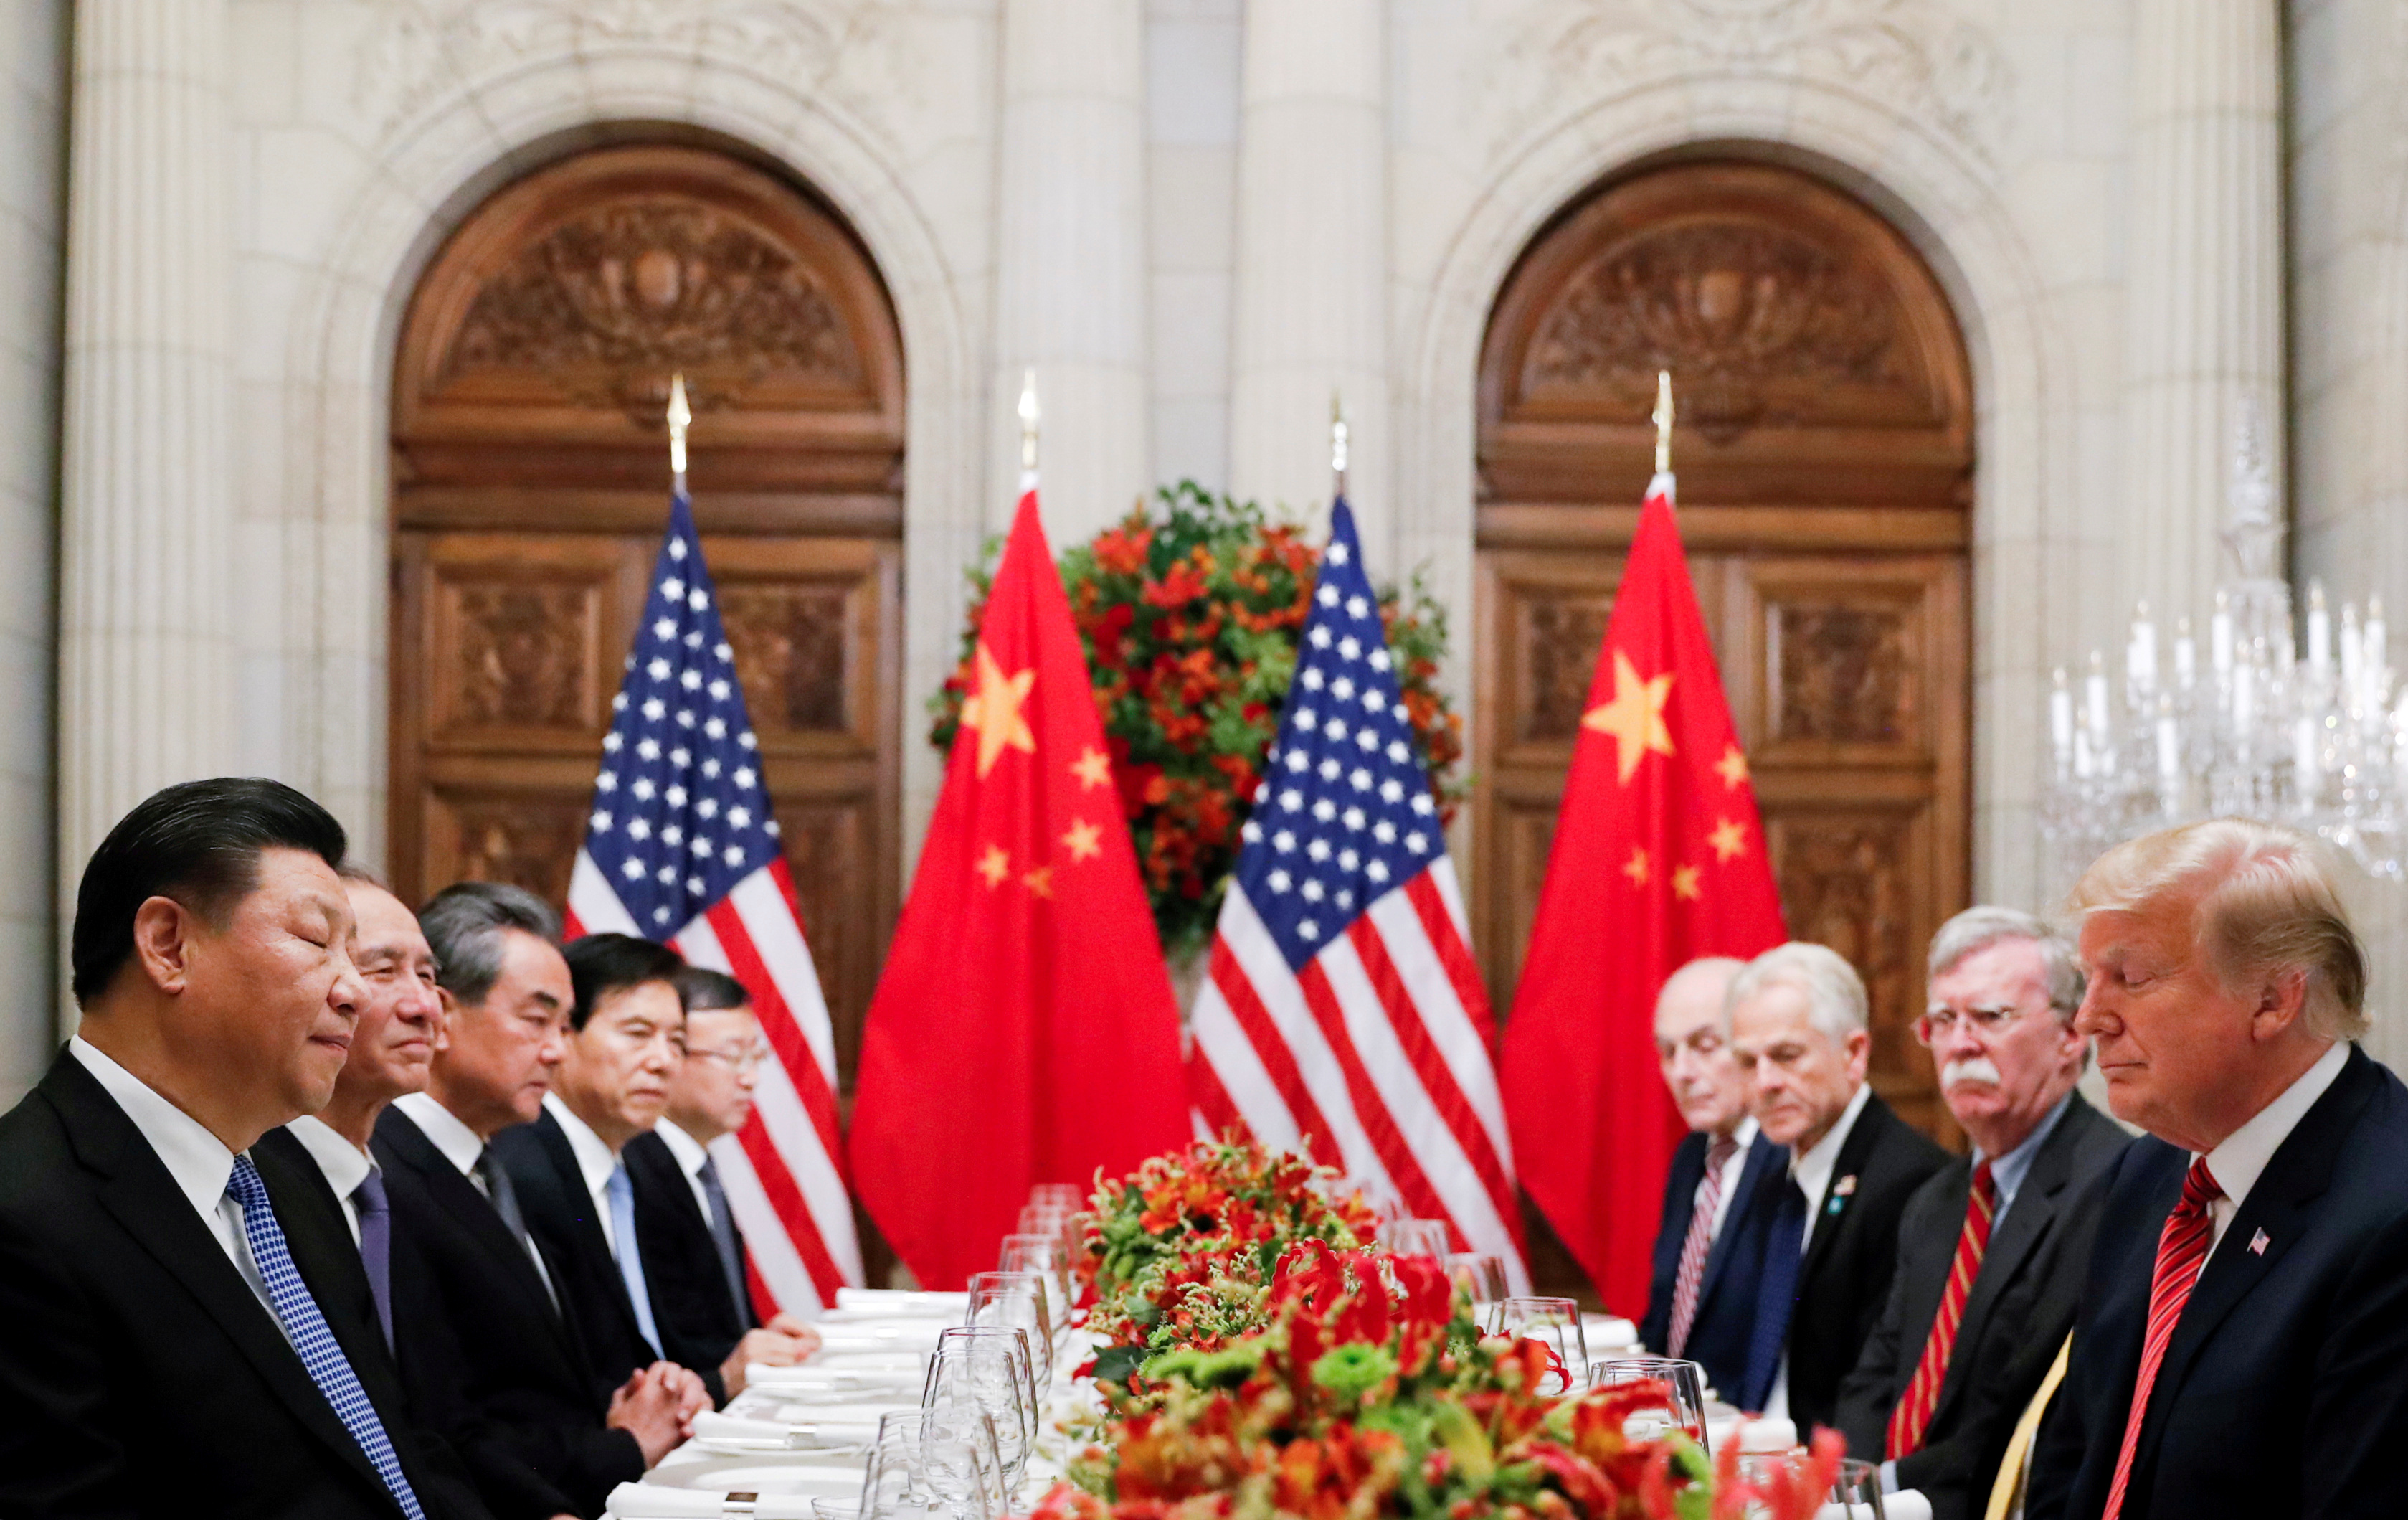 El presidente de EEUU, Donald Trump, durante su encuentro con Xi Jinping en Buenos Aires en 2018 (REUTERS/Kevin Lamarque)